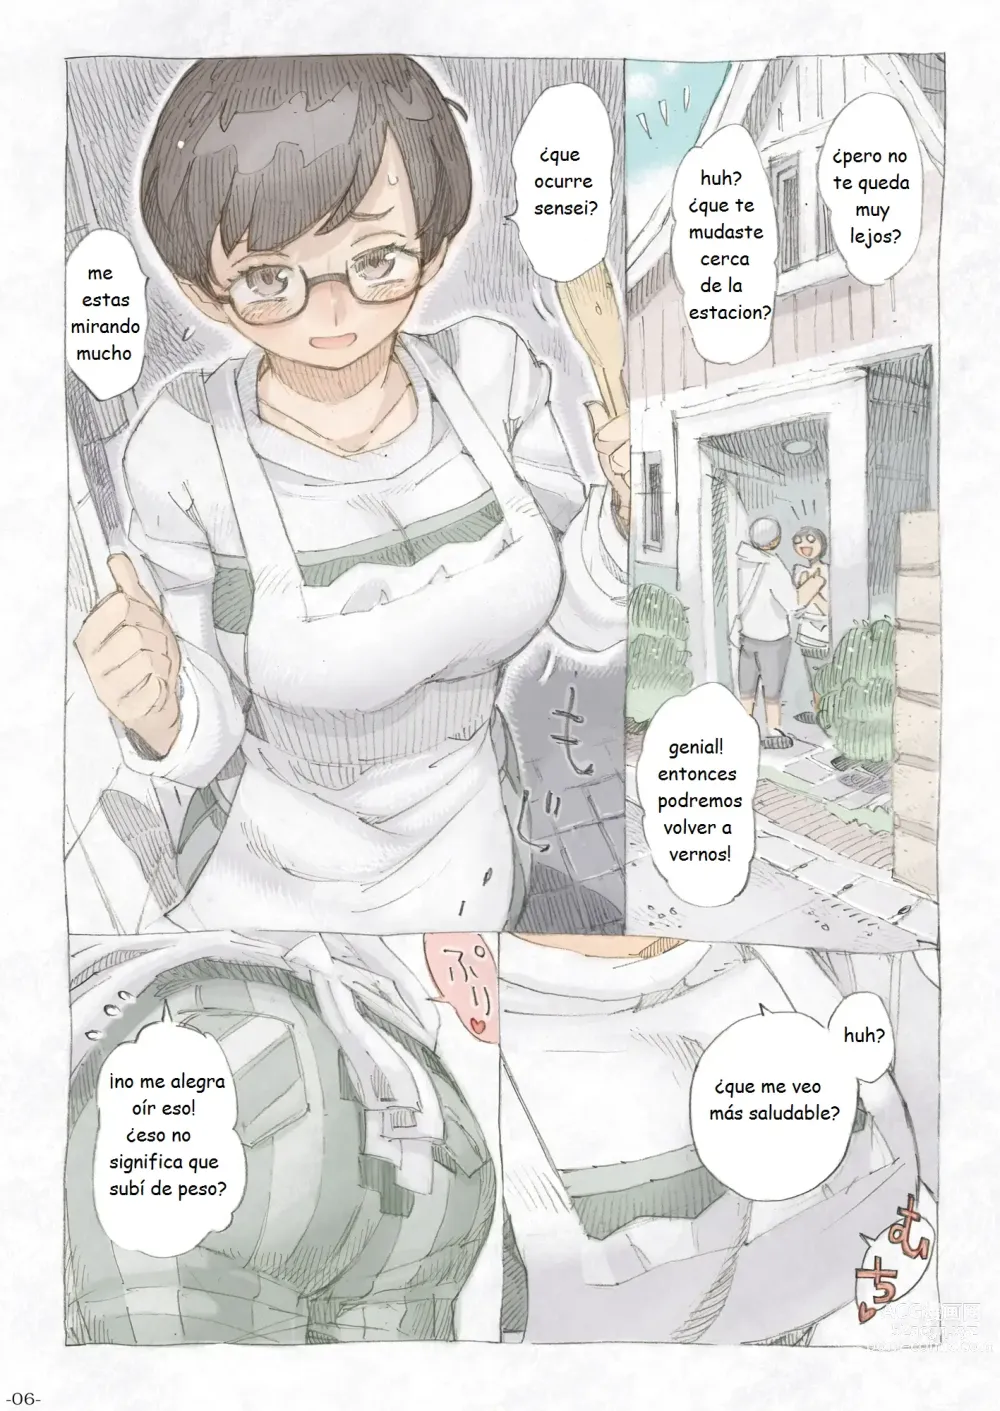 Page 6 of doujinshi Genkan Aketara 2-fun de Oku-san Making Her My Wife 2 Minutes After She Opened The Door To Me